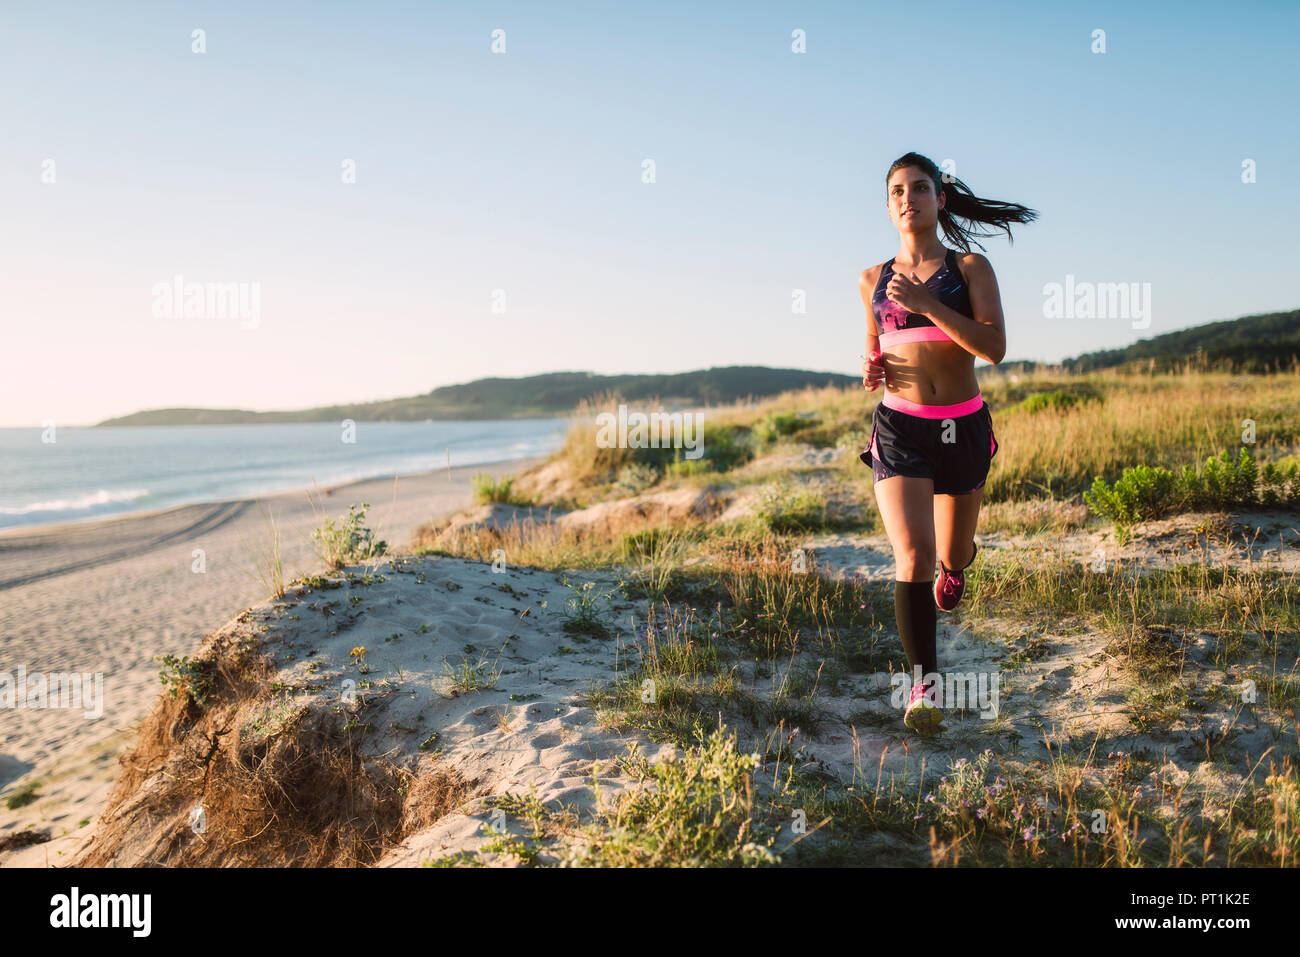 La formation sportive des jeunes sur la côte, le jogging Banque D'Images